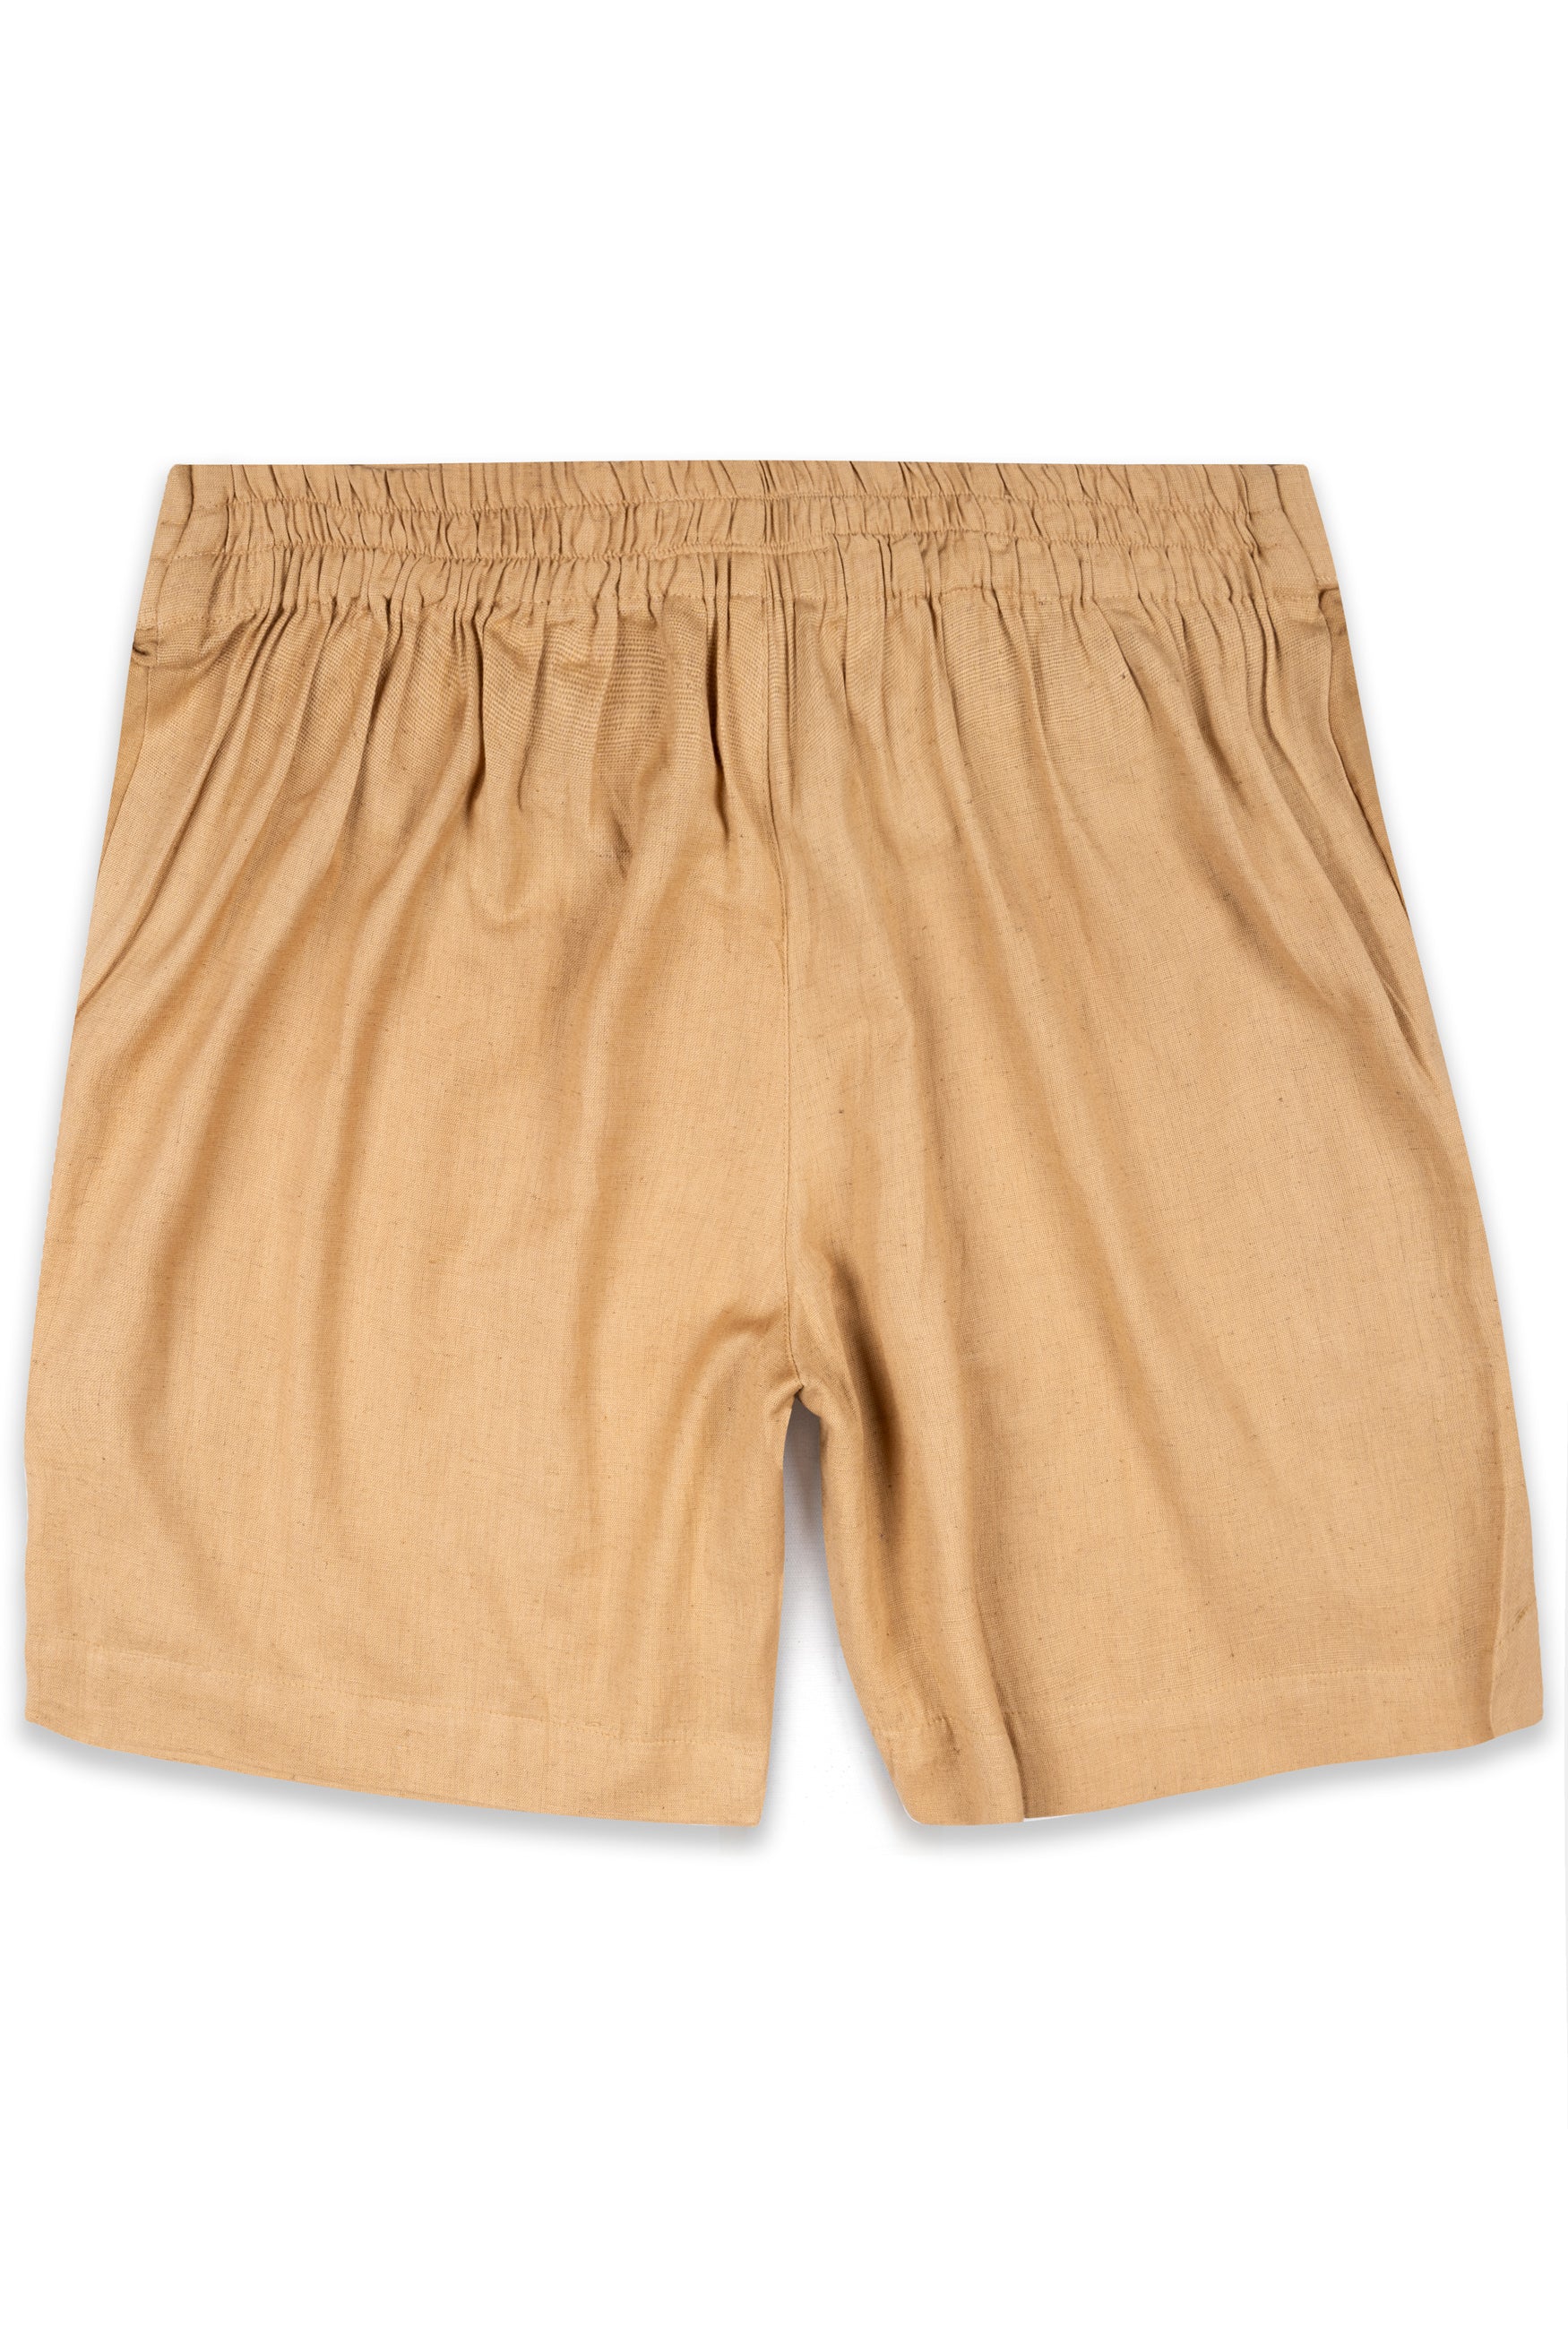 Tacao Orange Textured Luxurious Linen Shorts